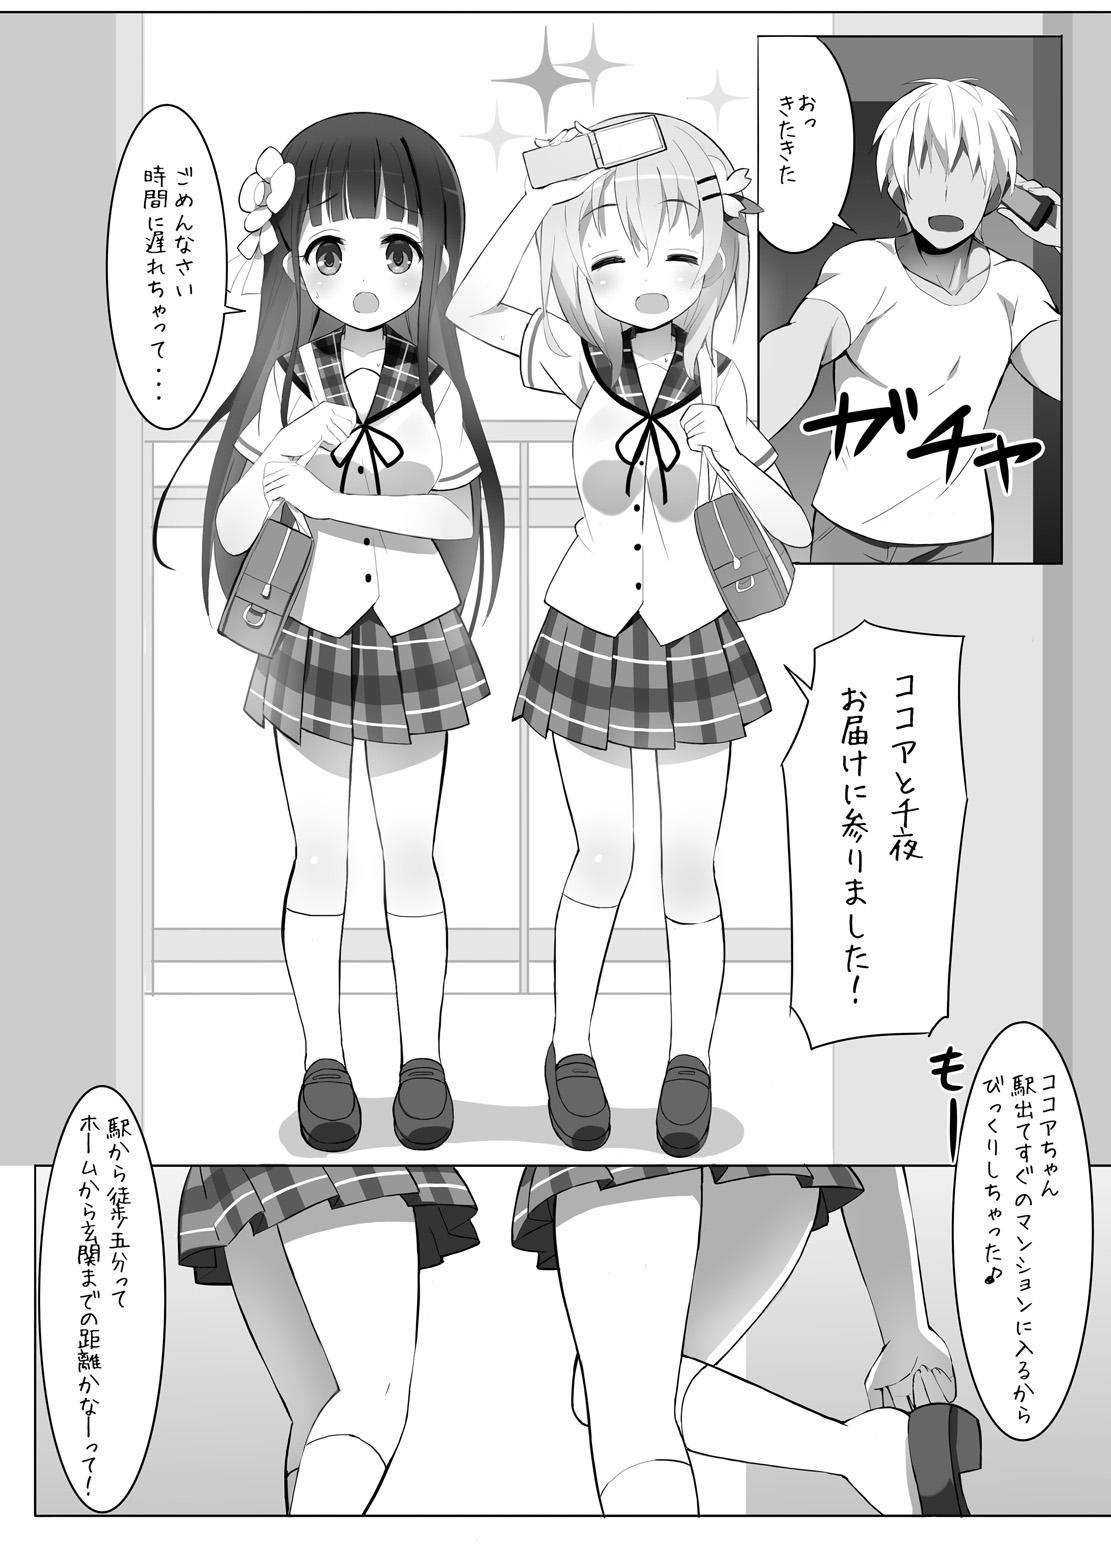 Black Delivery Cafe - Gochuumon wa usagi desu ka Penis - Page 2